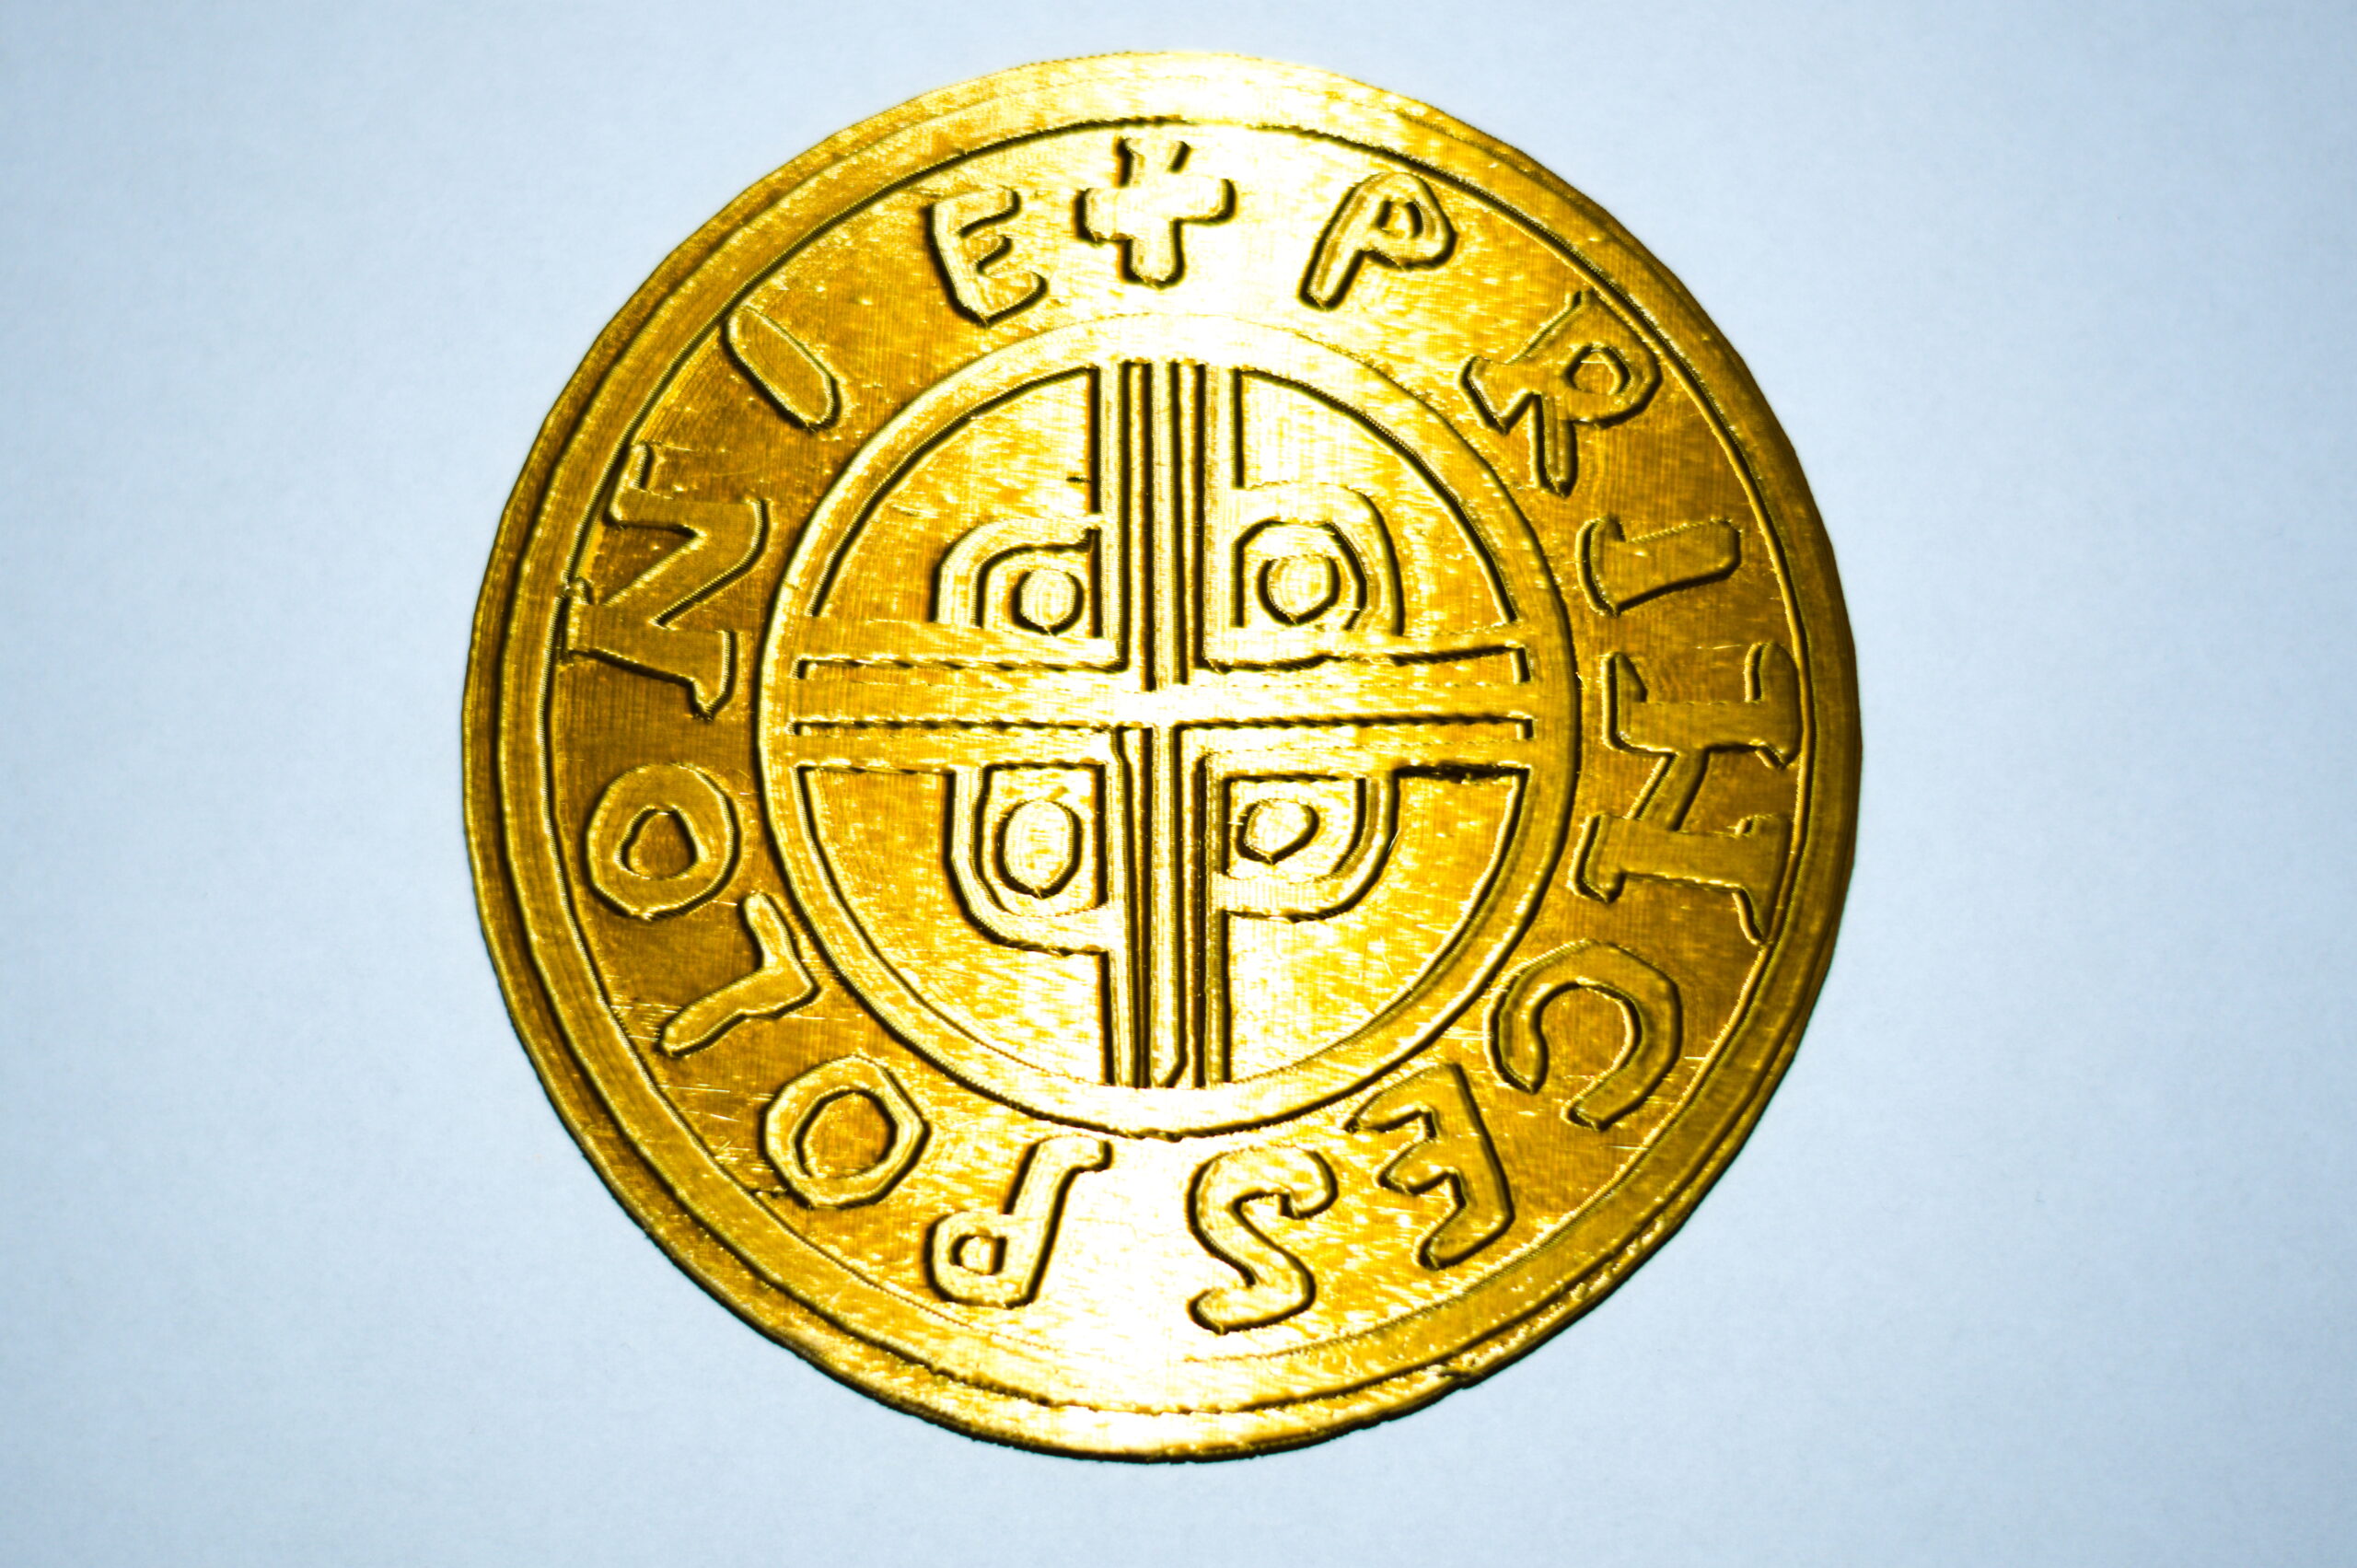 Rewers monety Princes Polonie: okrągłą monetę okala napis "Princes Polonie" rozdzielany krzyżykiem. Wewnątrz koło, w którym znajduje się ozdobny krzyż.